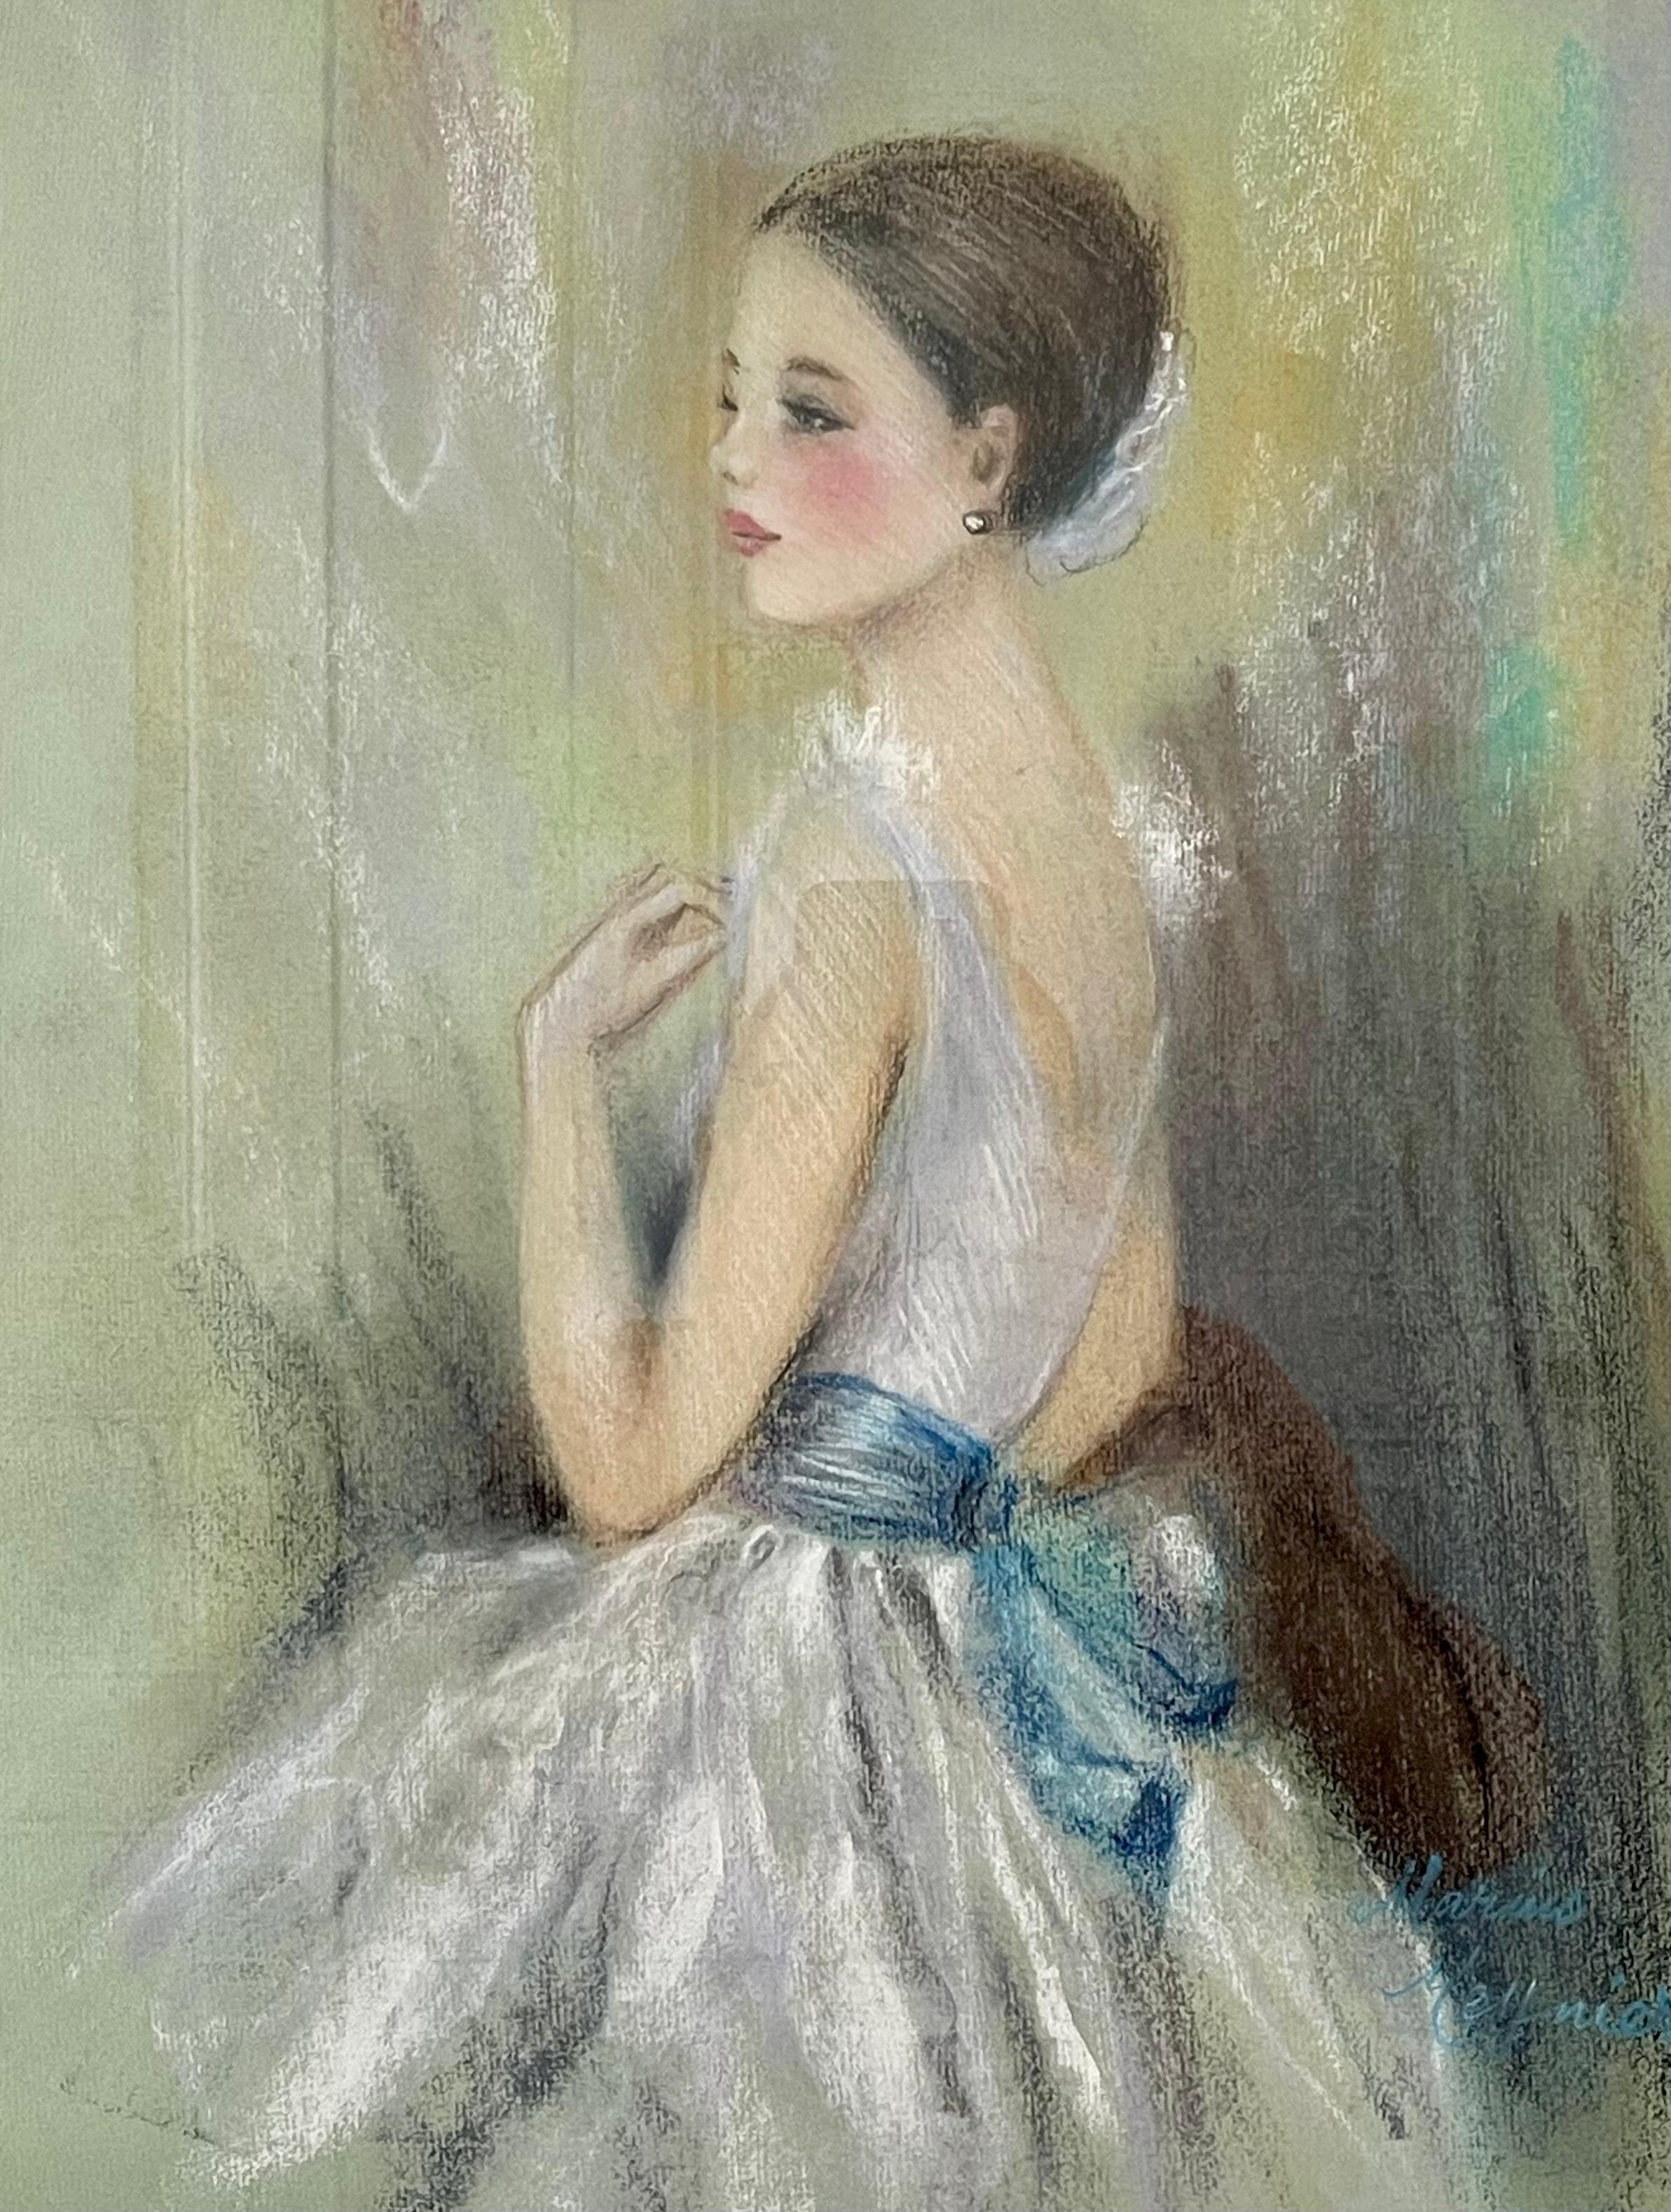 Dieses schön gerahmte Gemälde von Meynier zeigt eine brünette Tänzerin in einem Ballettkostüm, bestehend aus einem weißen Trikot und einem Tutu mit blauer Schärpe. Die Tänzerin ist im Profil mit Blick nach links dargestellt, wobei sie ihre Hand